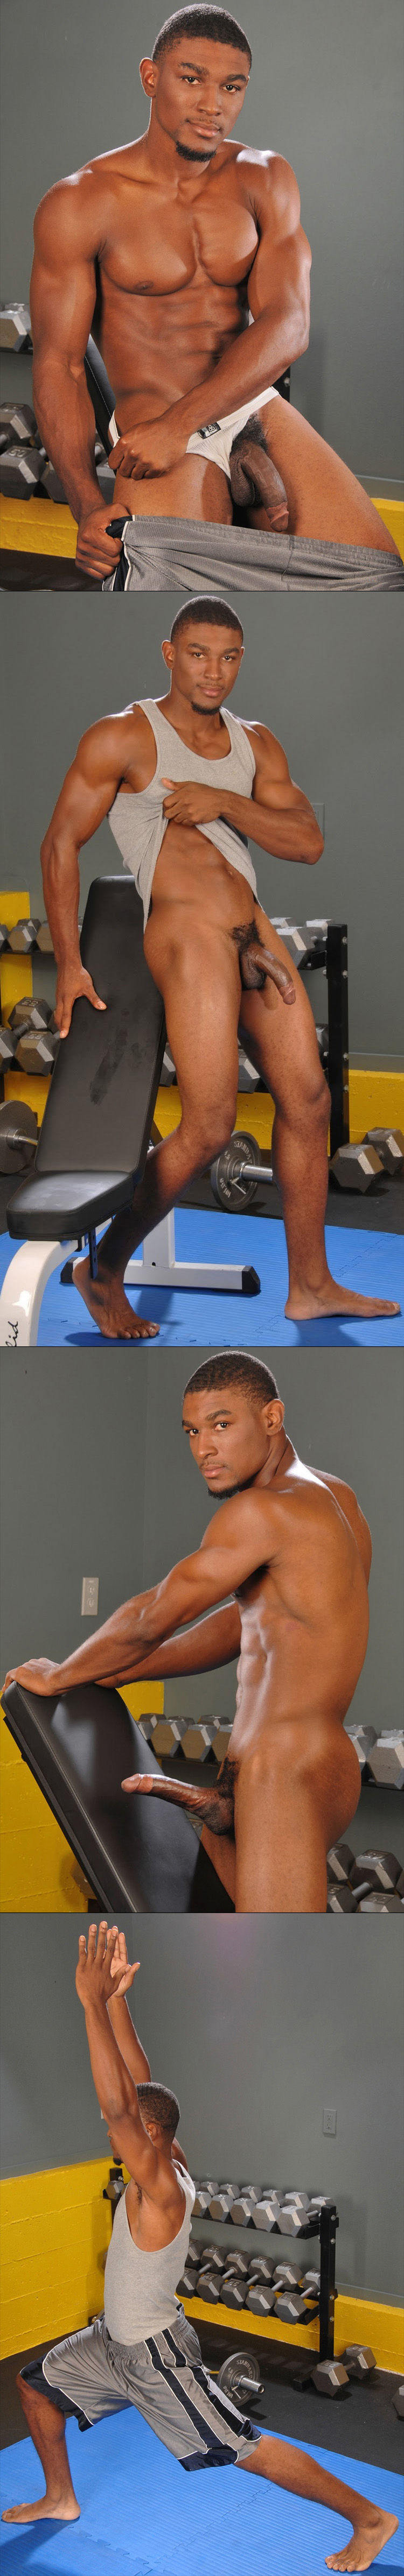 atk polish dr9inch black male feet gym routine